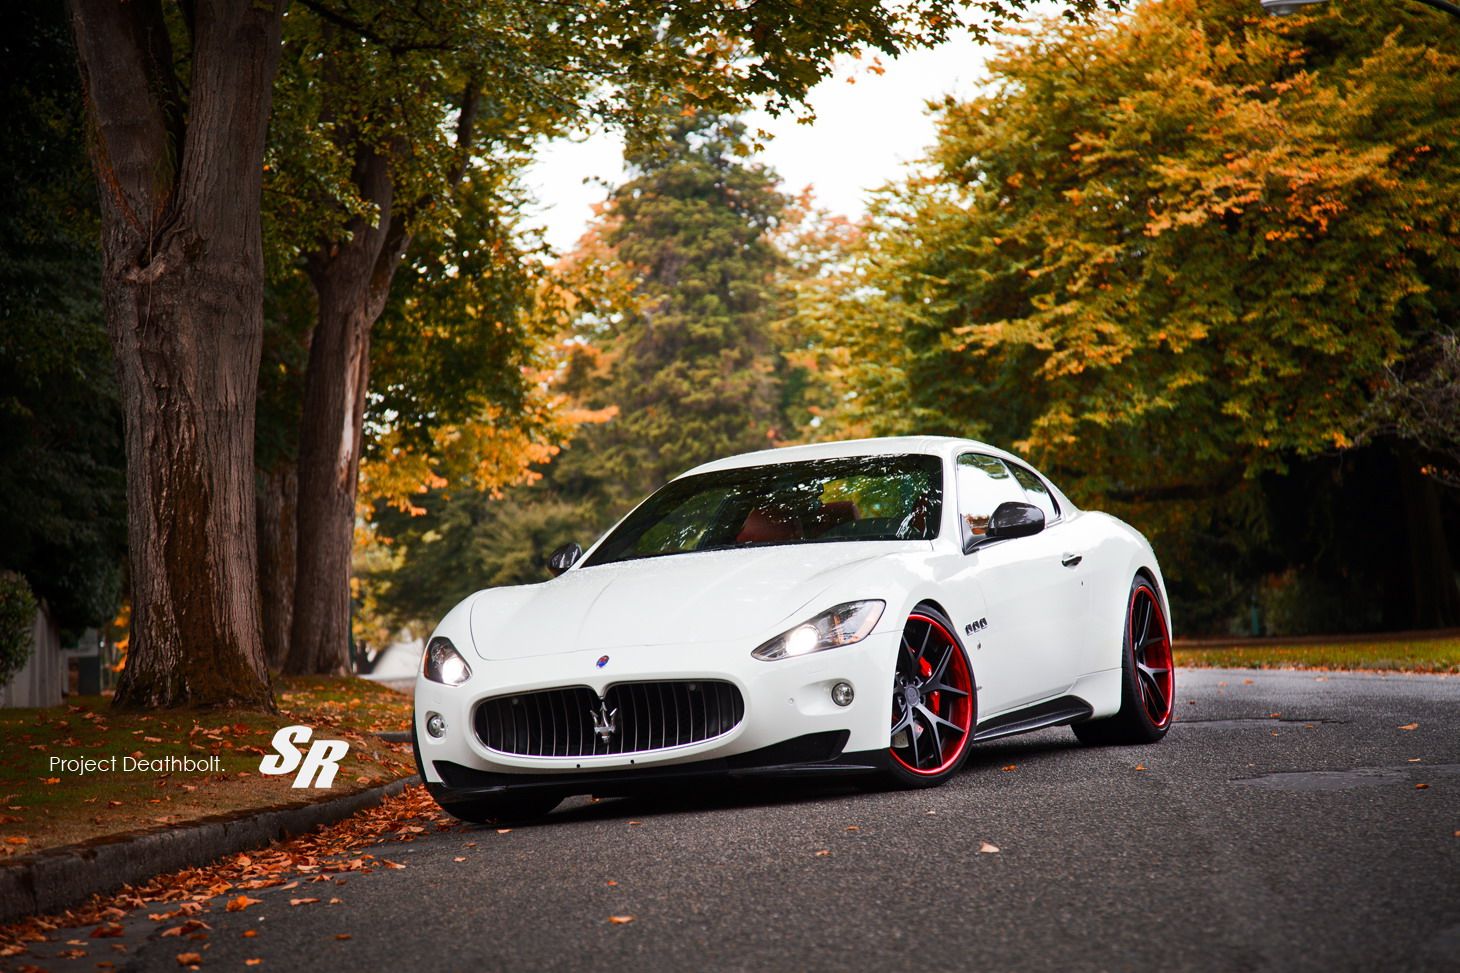 2012 Maserati GranTurismo Project Deathbolt II by SR Auto Group